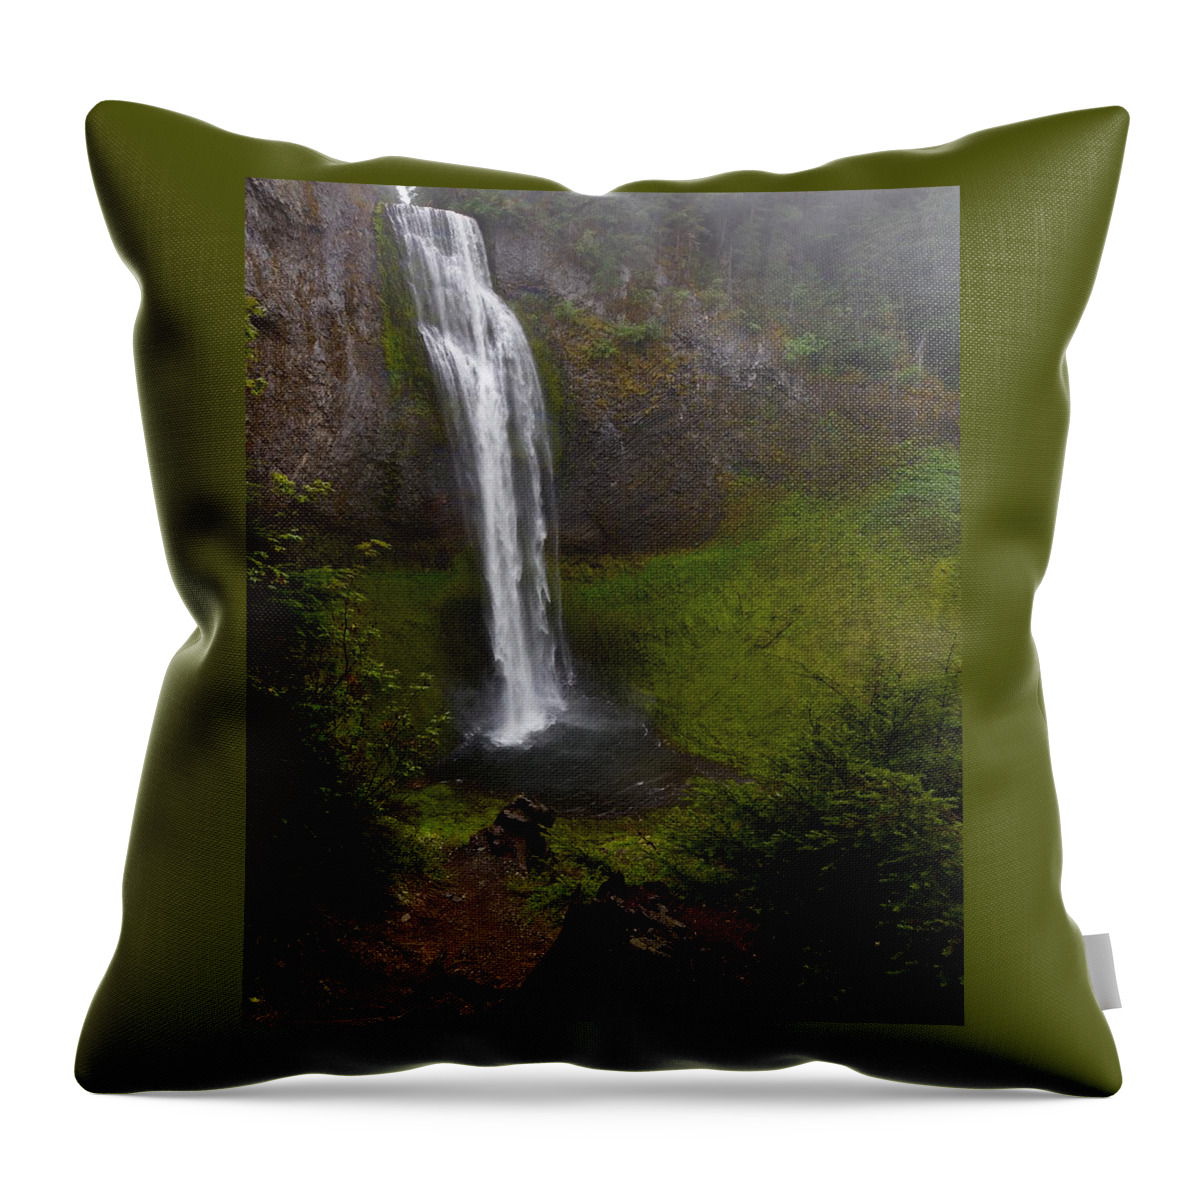 Waterfall Throw Pillow featuring the photograph Salt Creek Falls by Todd Kreuter